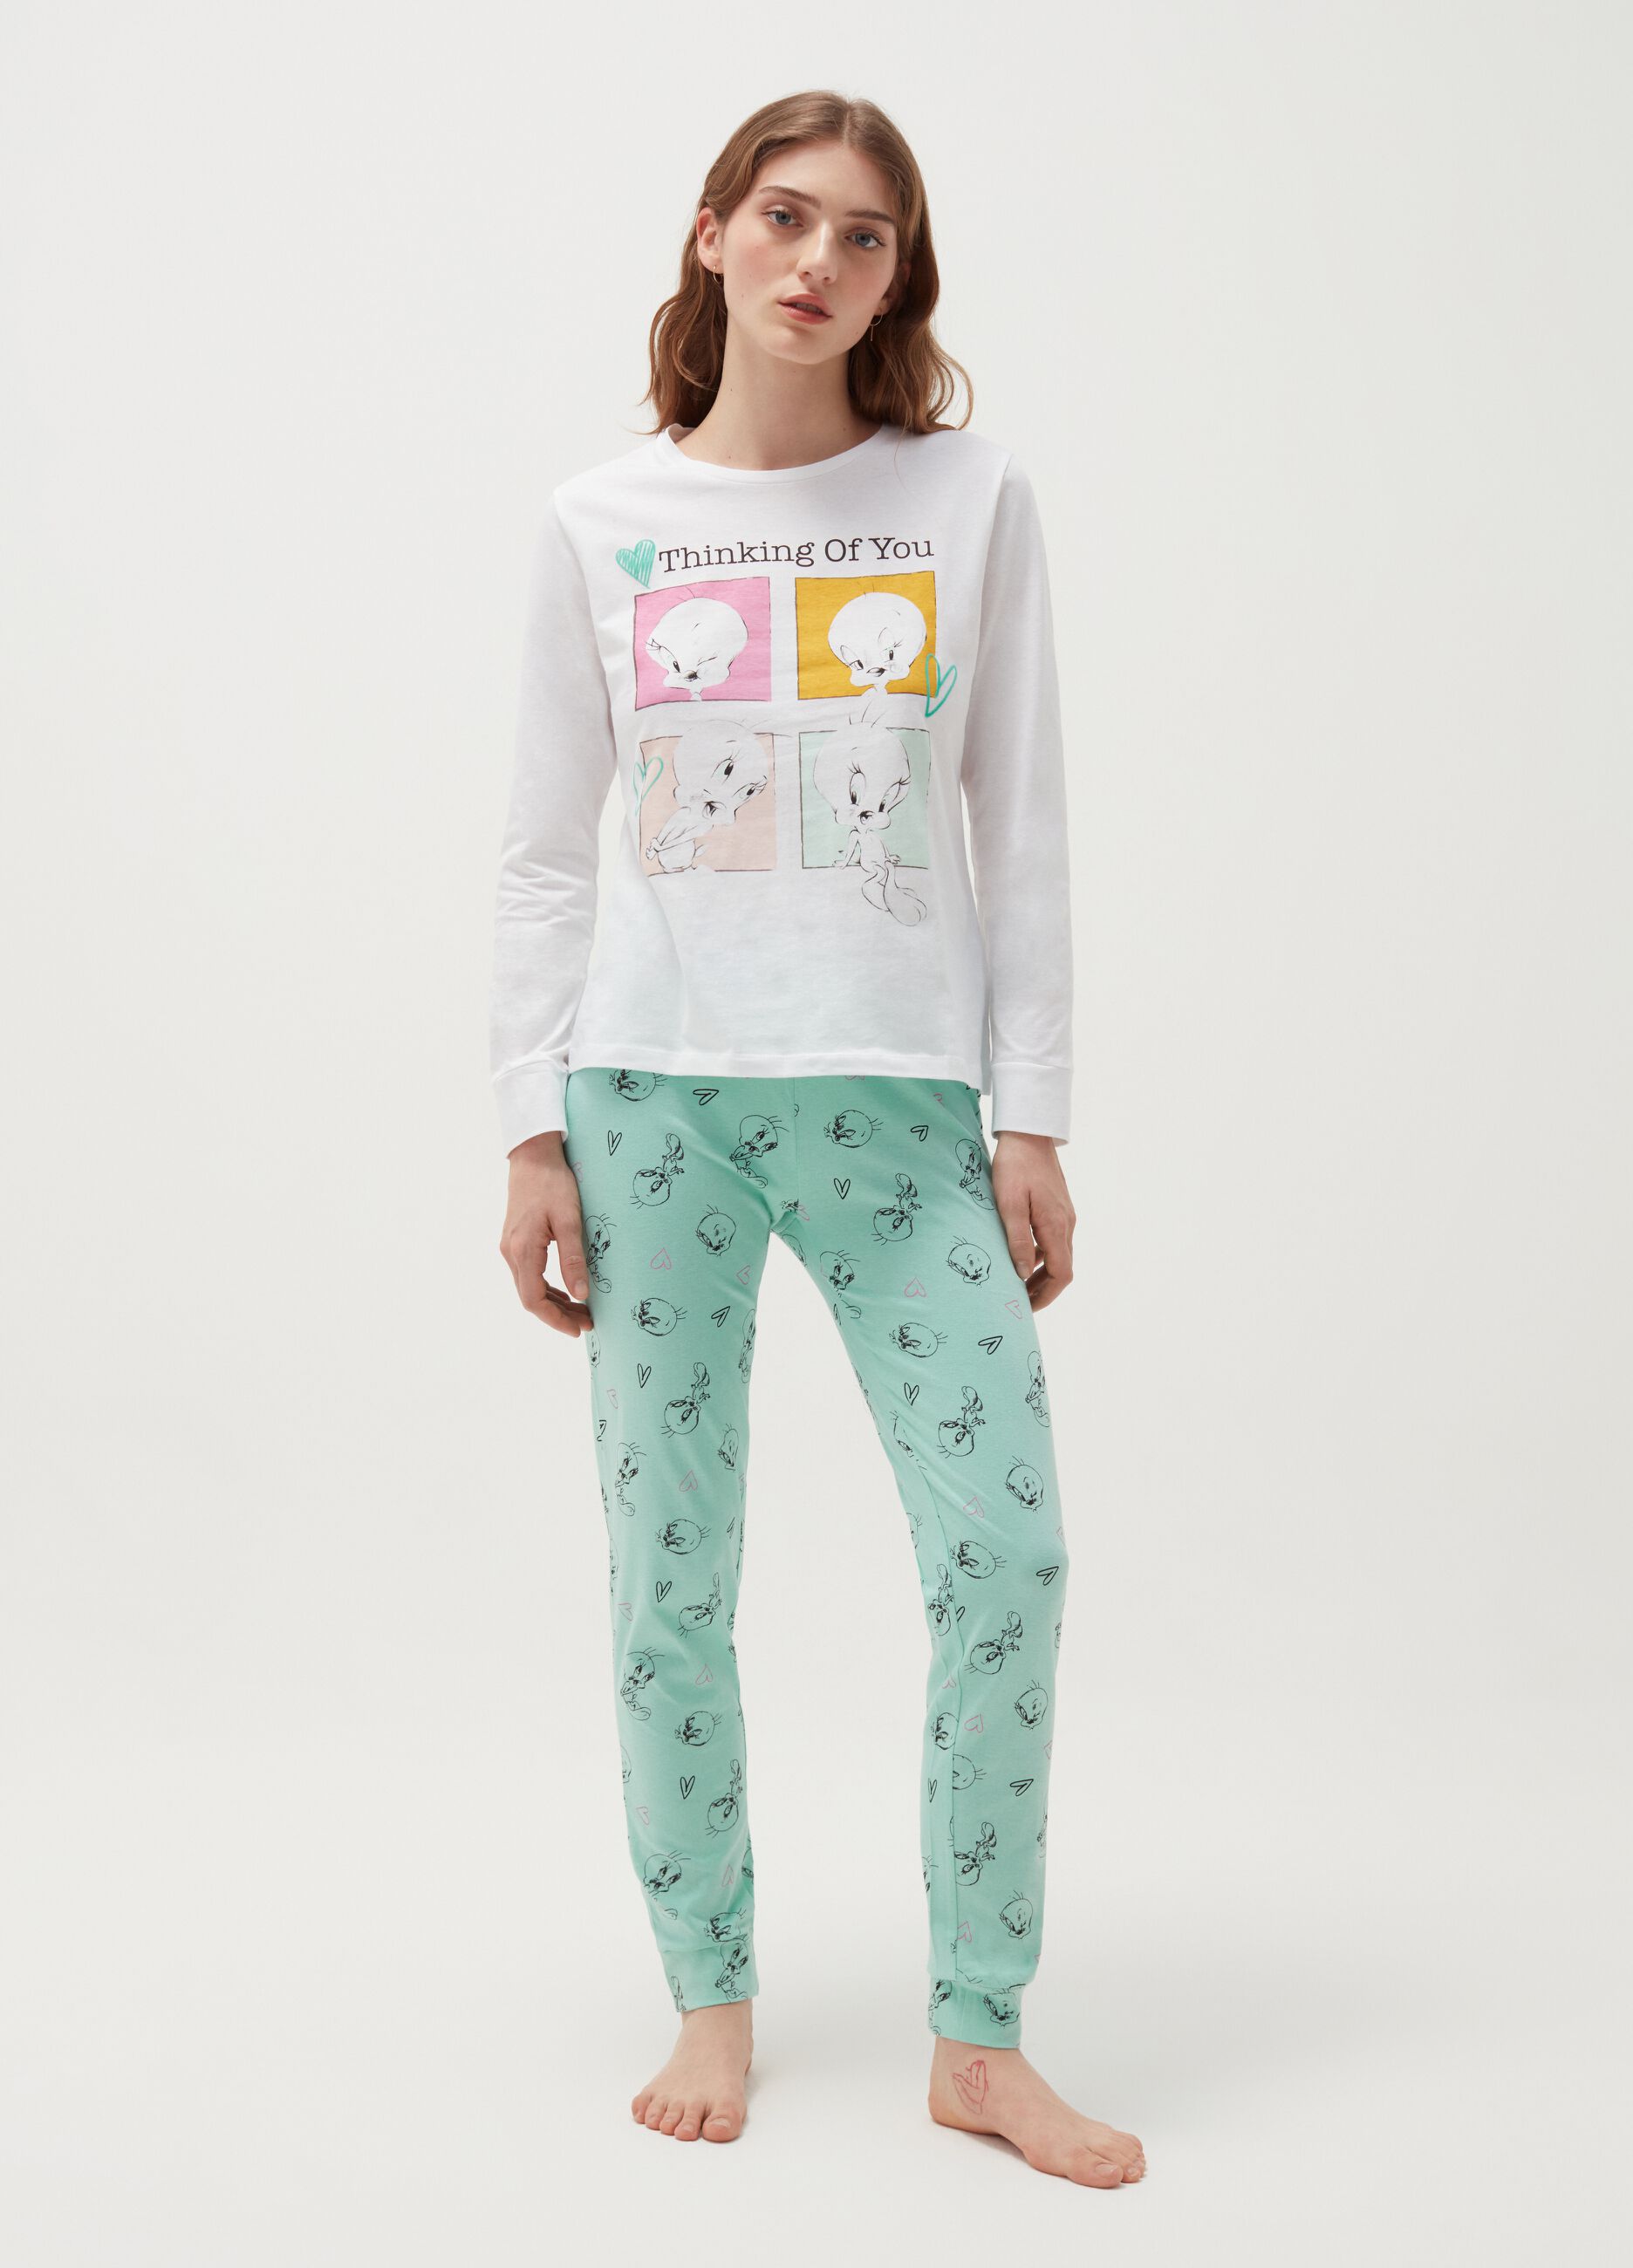 Long cotton pyjamas with Tweetie Pie pattern